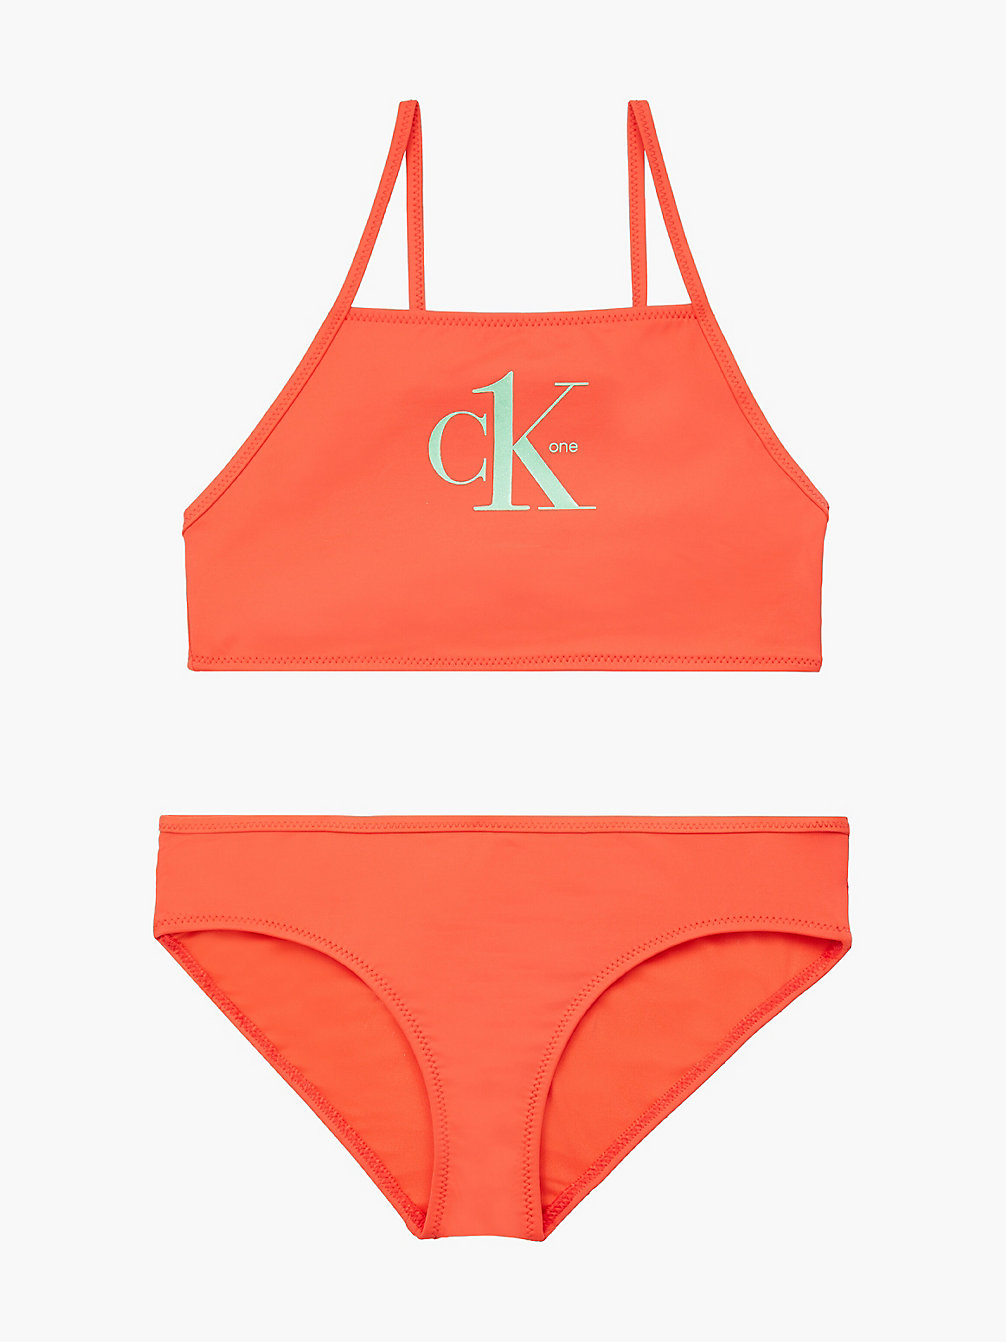 BRIGHT VERMILLION Girls Bralette Bikini Set - Y2ck One undefined girls Calvin Klein